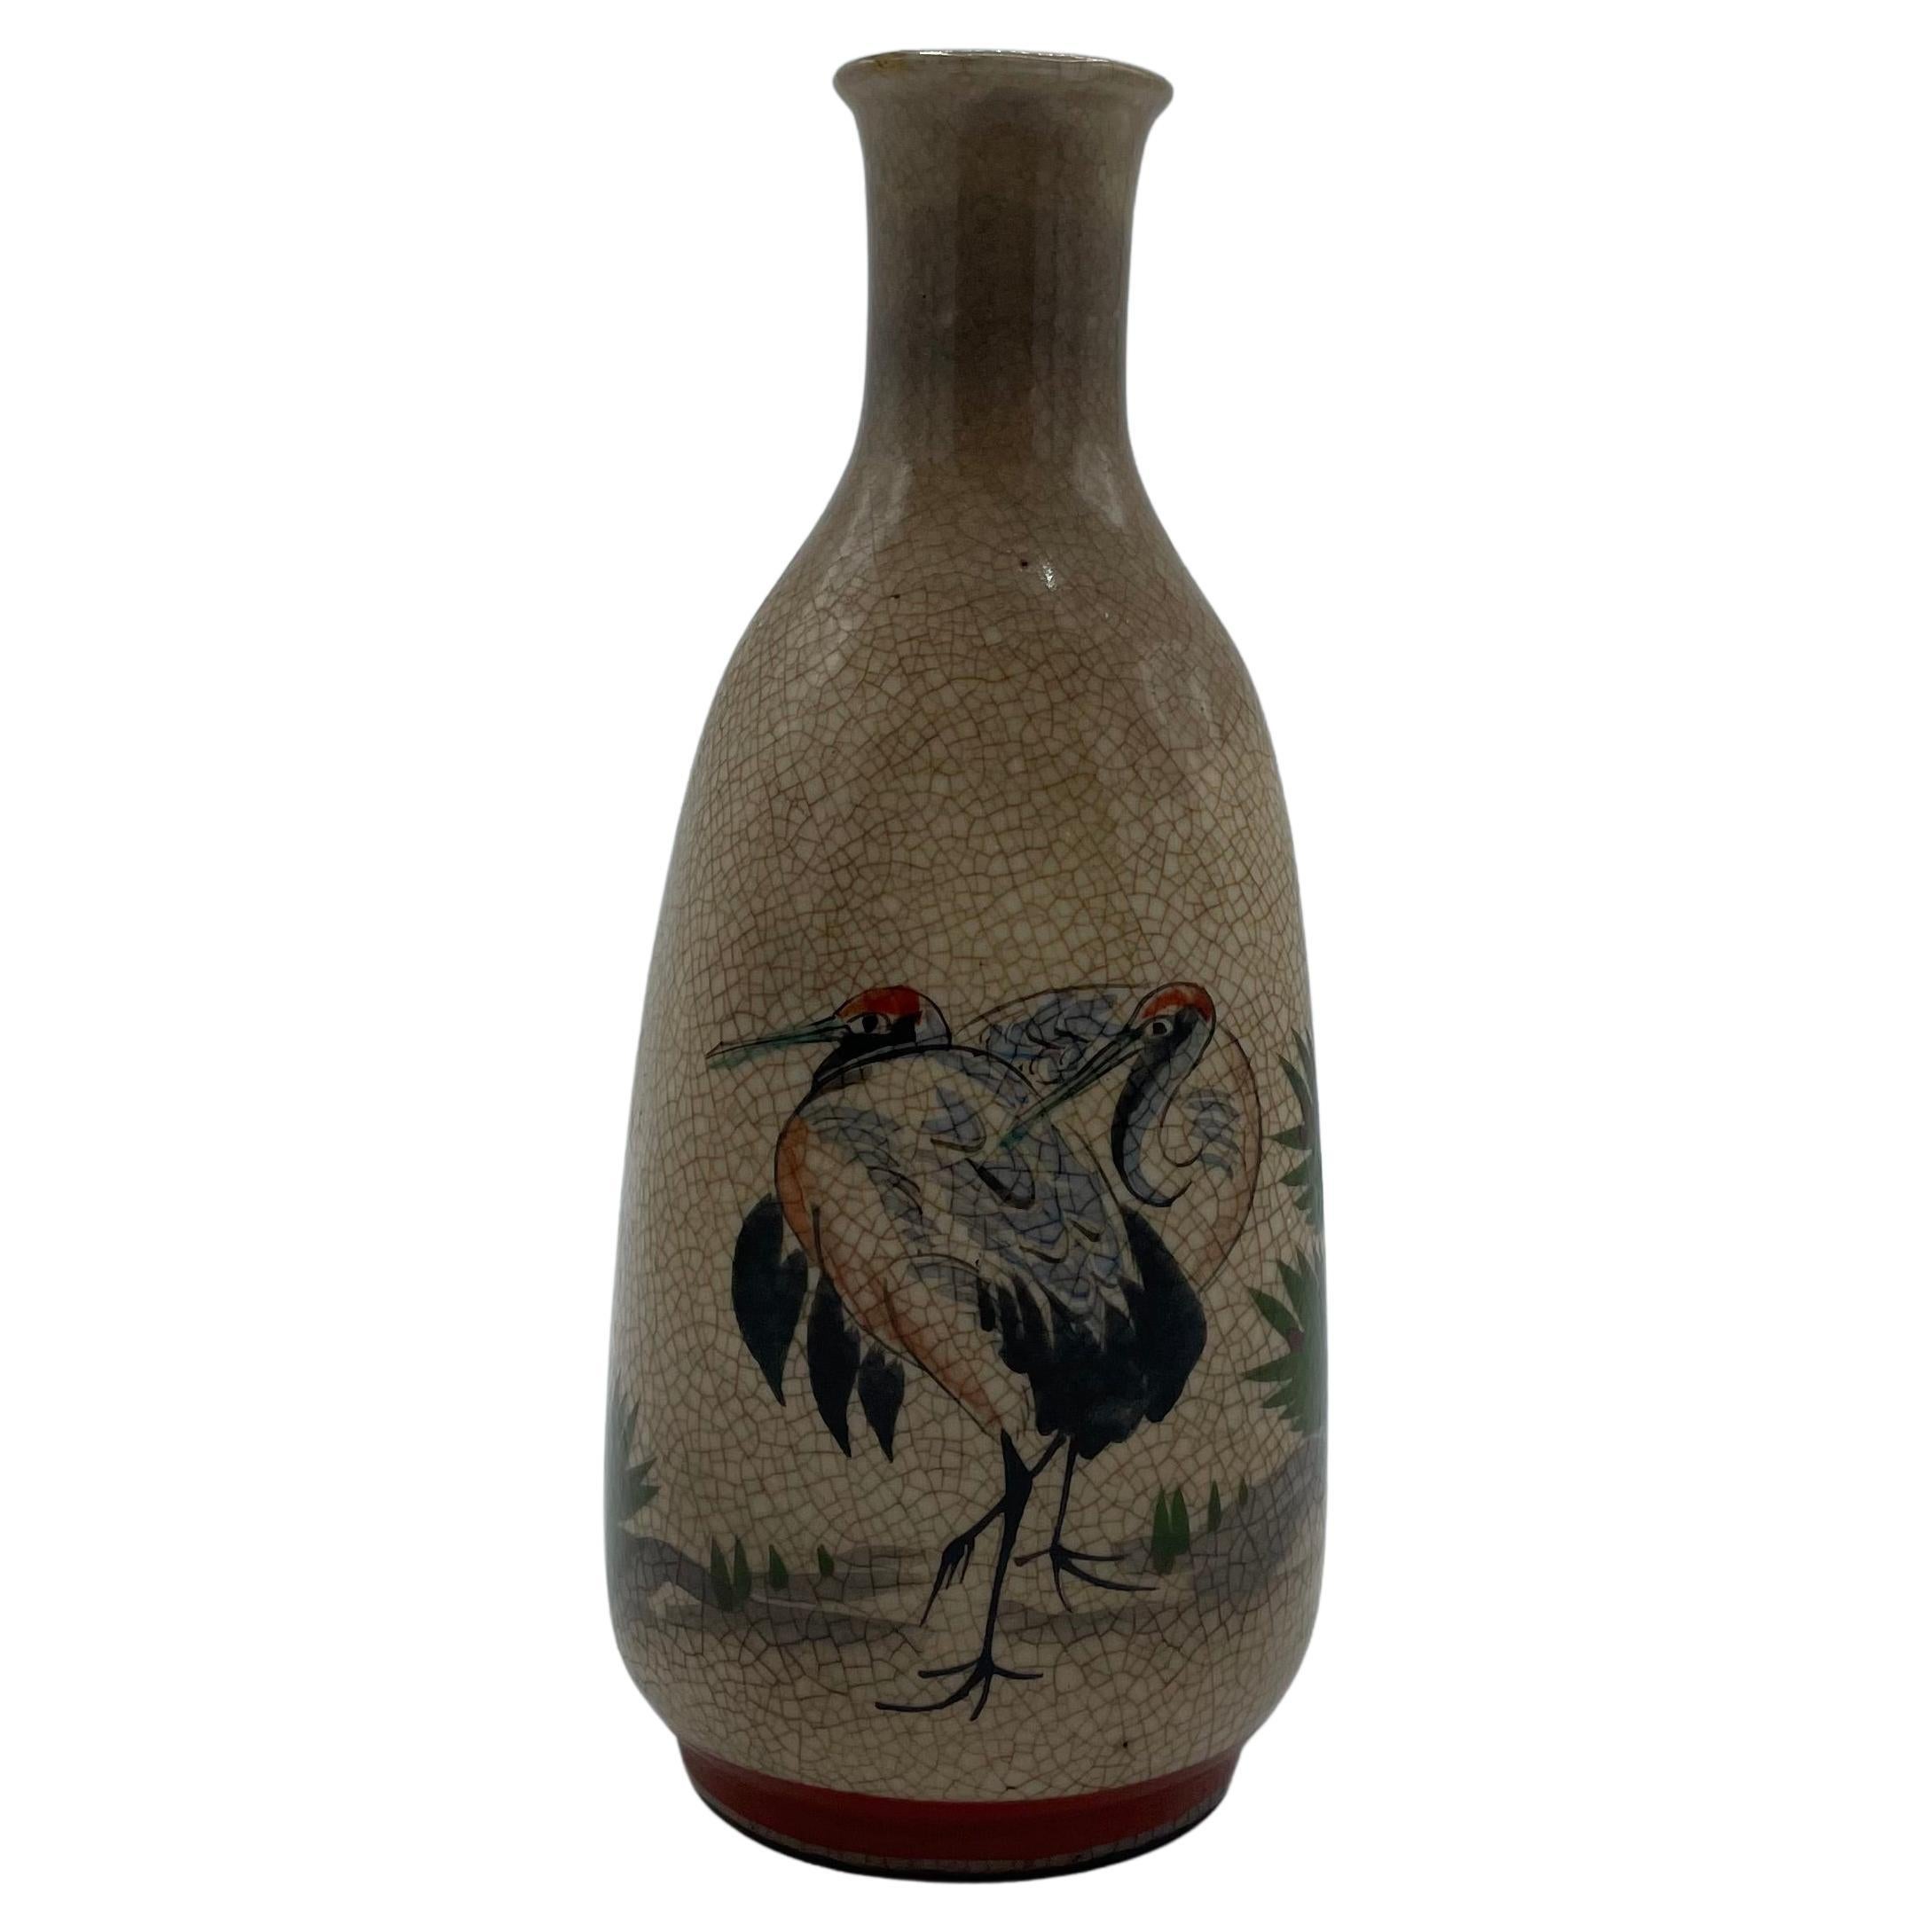 Bouteille de Sake japonaise ancienne avec oiseaux Tsuru des années 1960